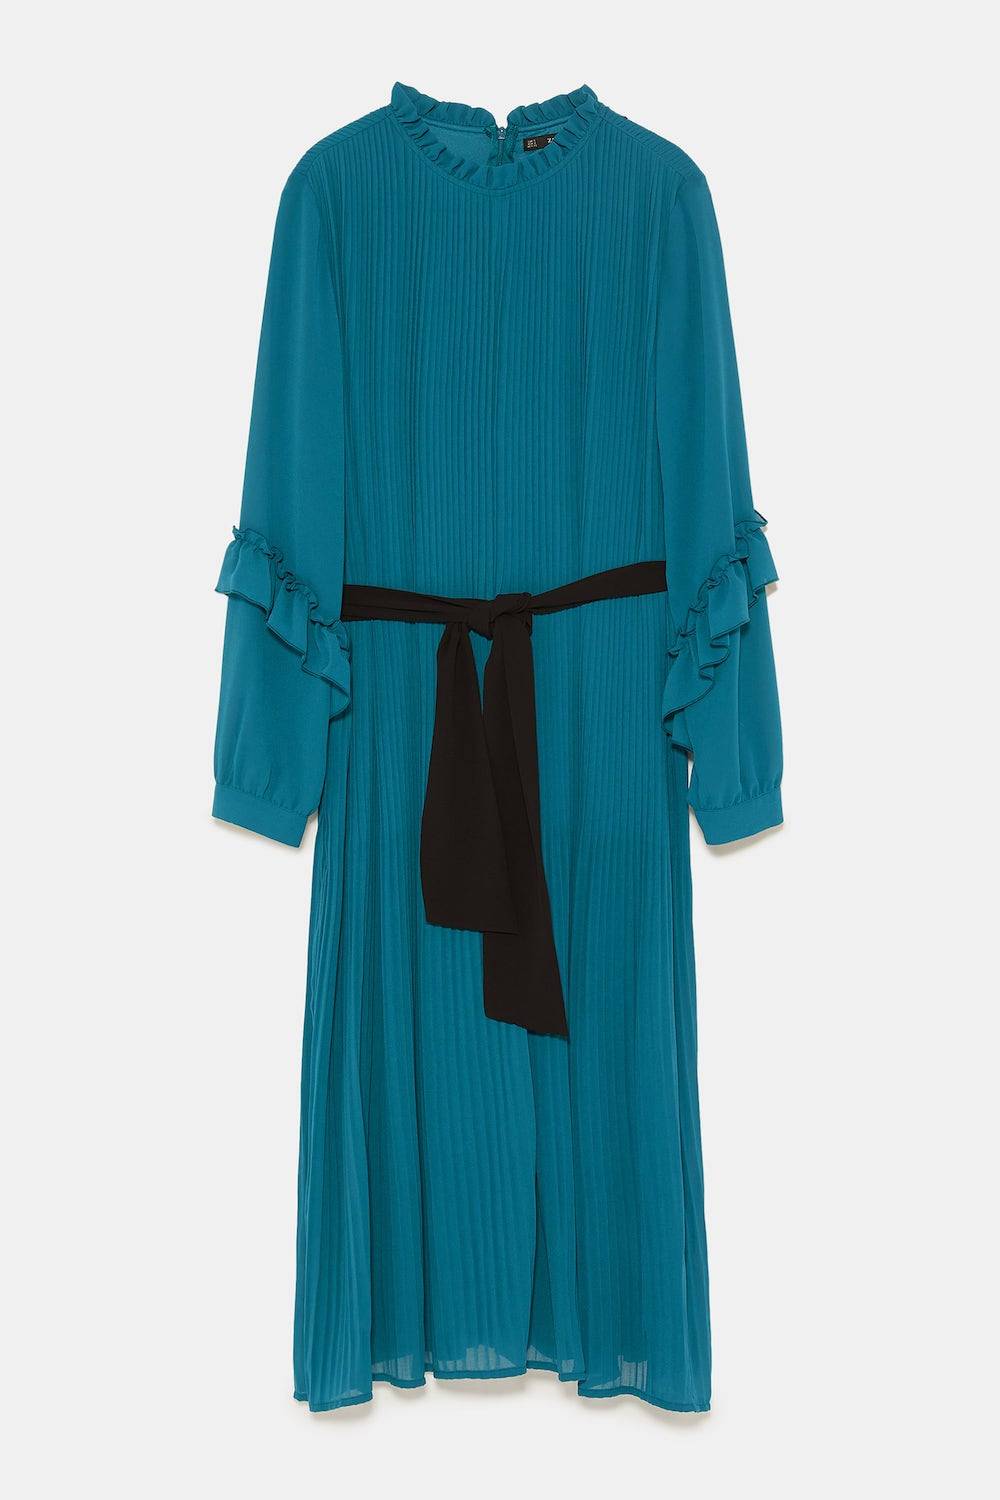 Sukienka-kombinezon Zara, cena 199 zł (Fot. materiały prasowe)